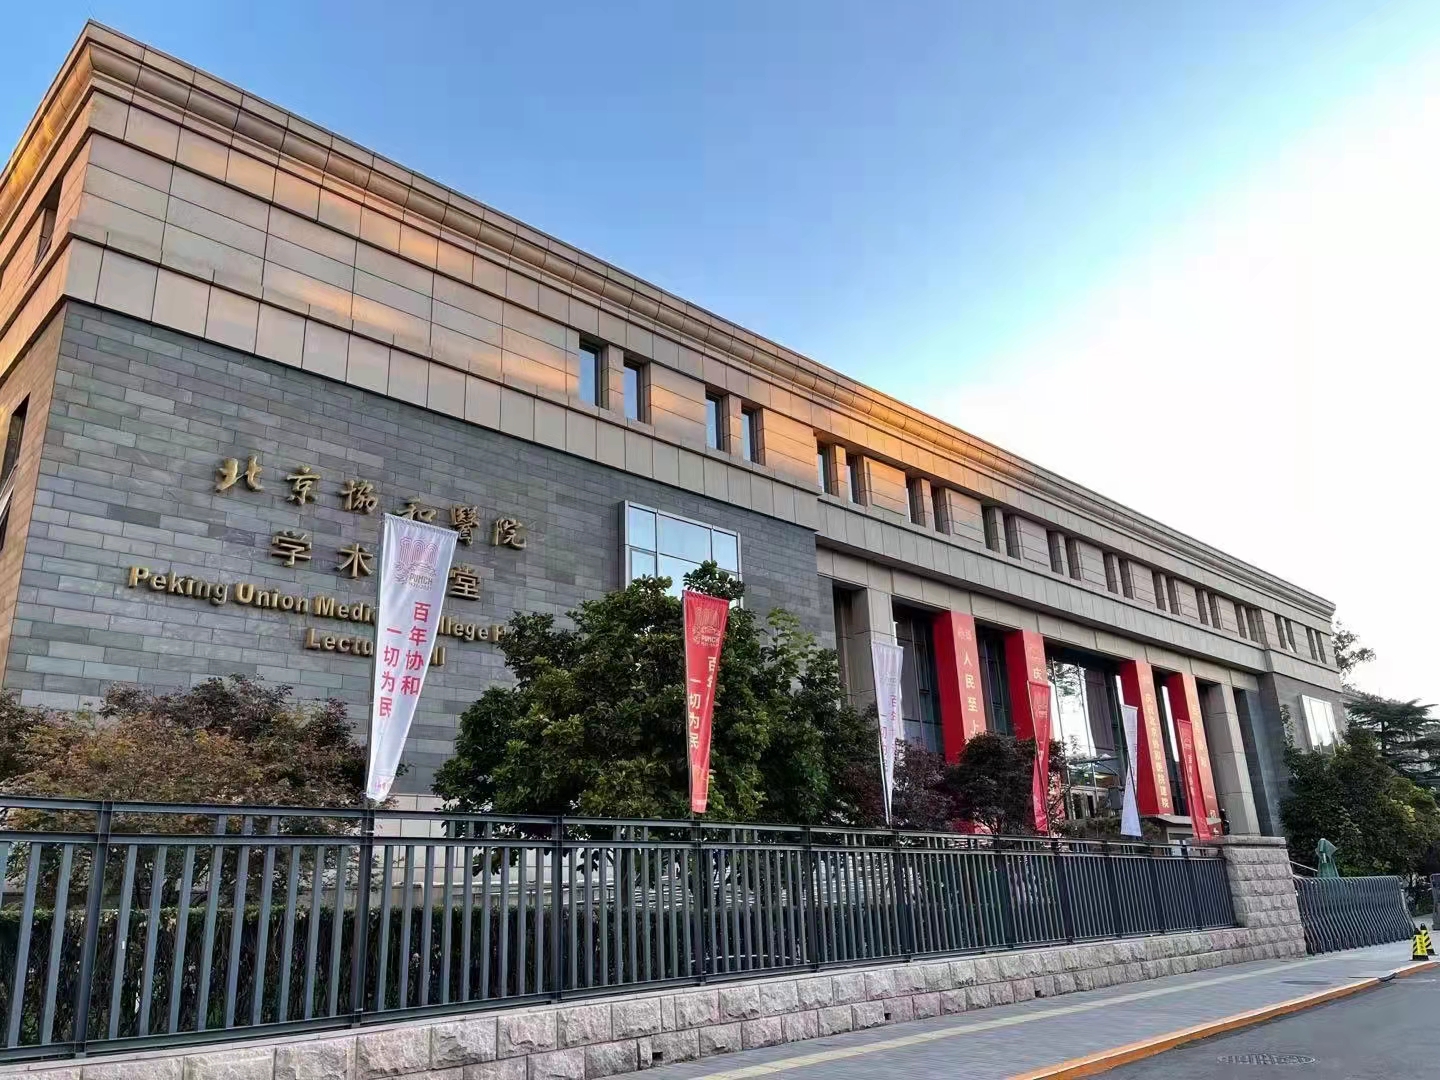 北京協和醫院百年院慶在尚武會議拍攝中取得圓滿